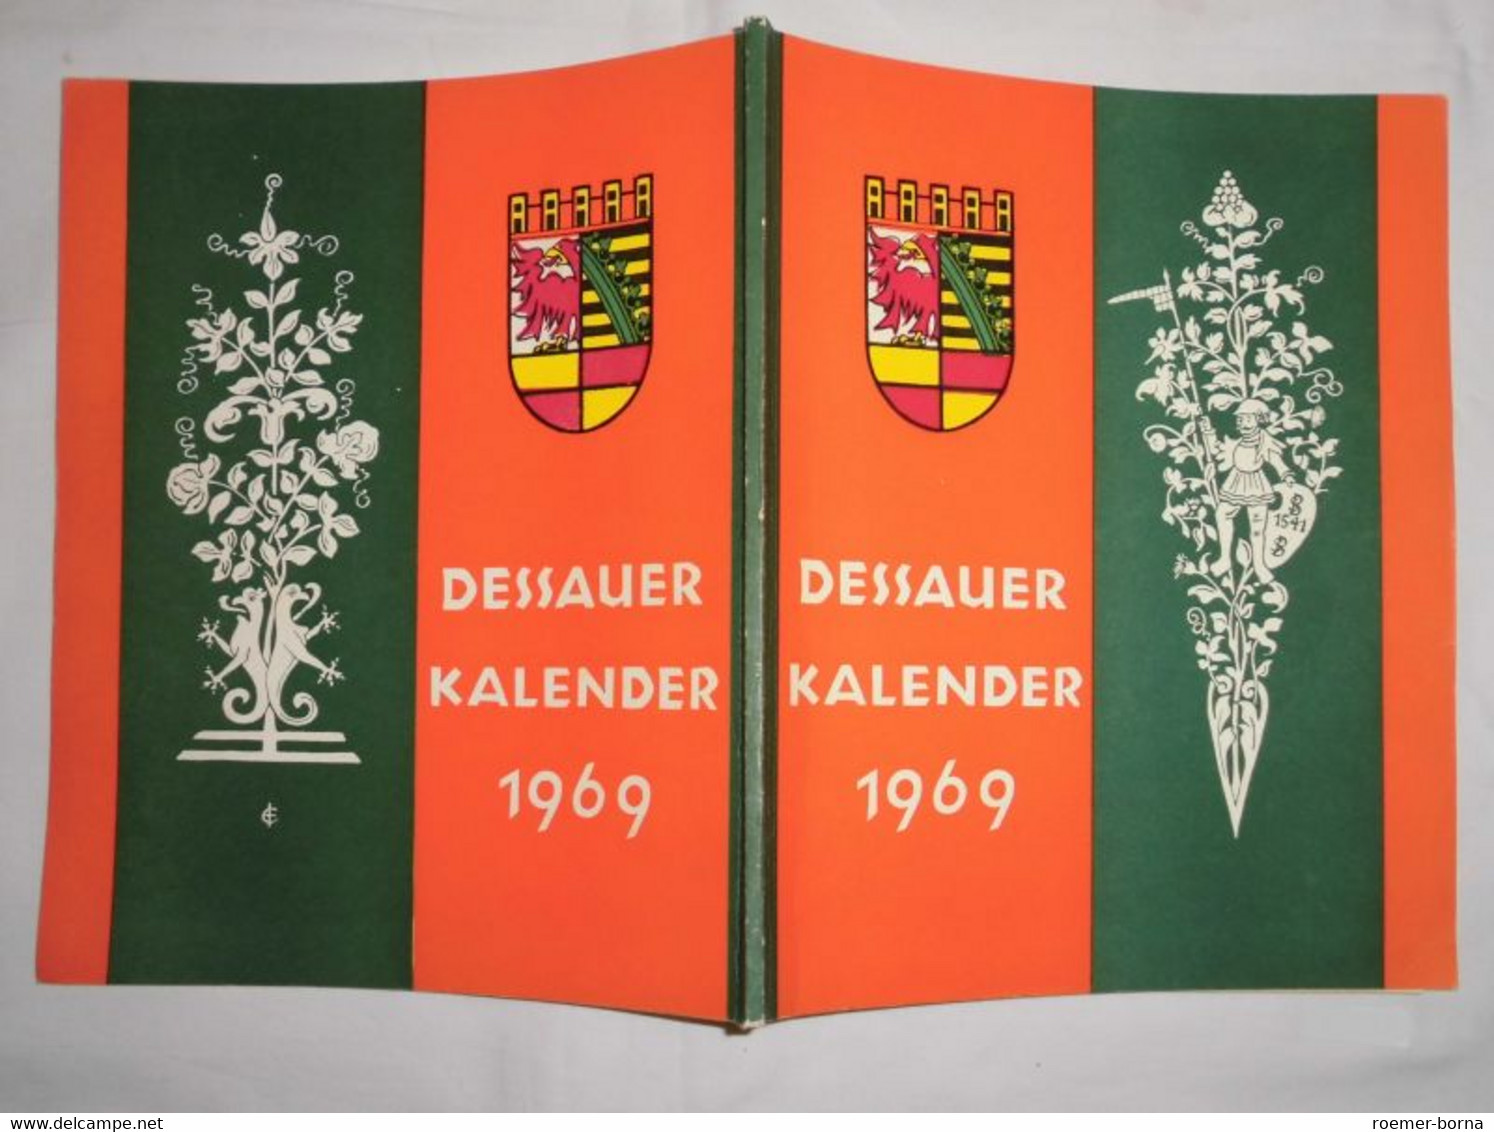 Dessauer Kalender 1969 (13. Jahrgang) - Calendars